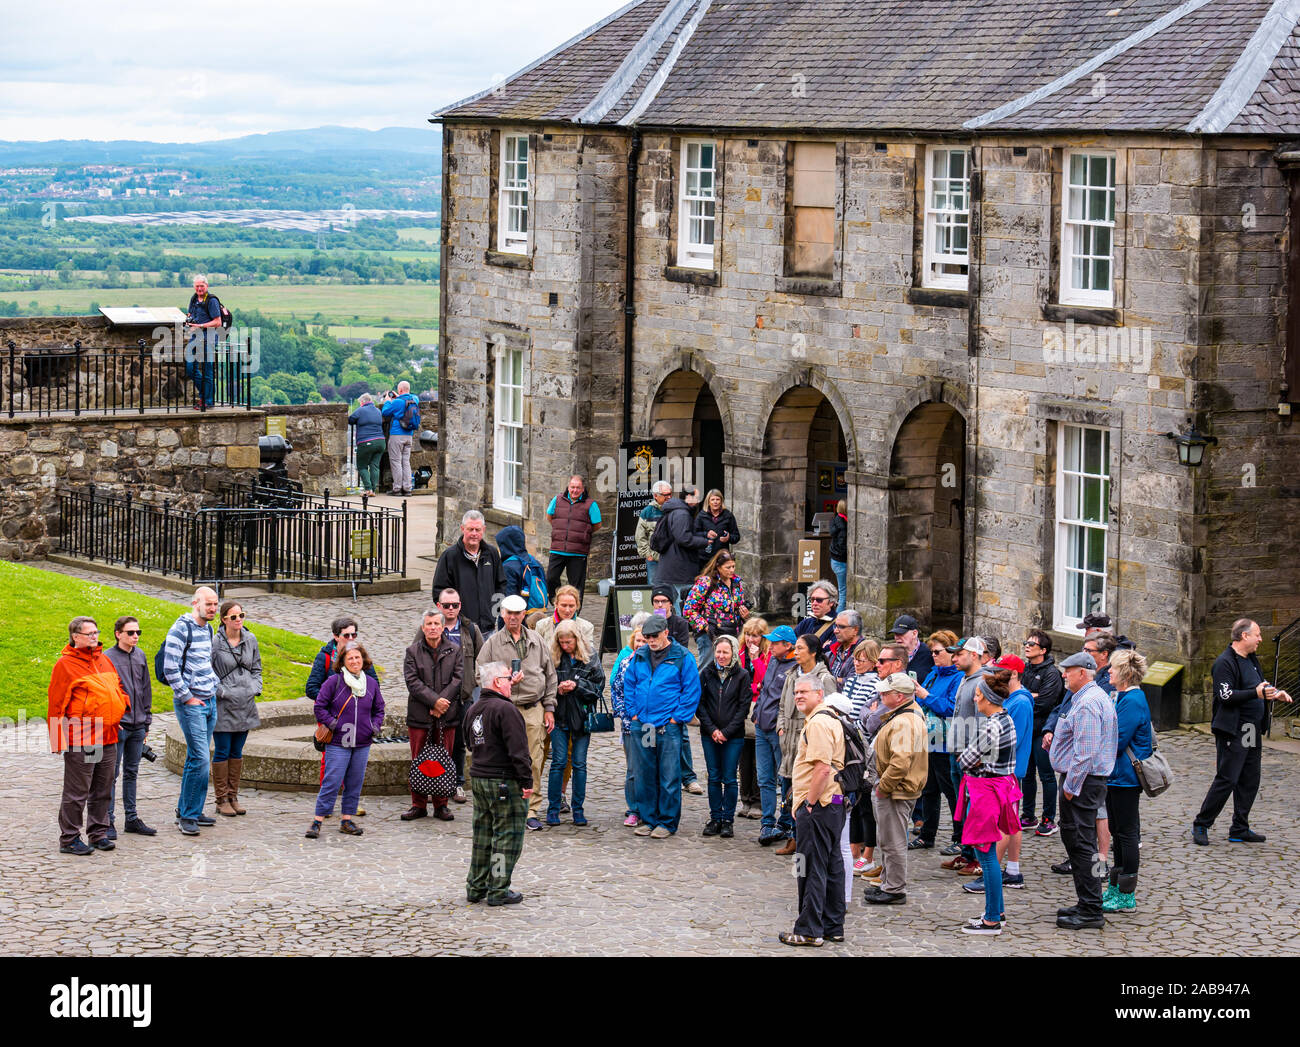 Guide vêtu pantalon tartan tour donnant aux touristes, Grand batterie, le château de Stirling, Scotland, UK Banque D'Images